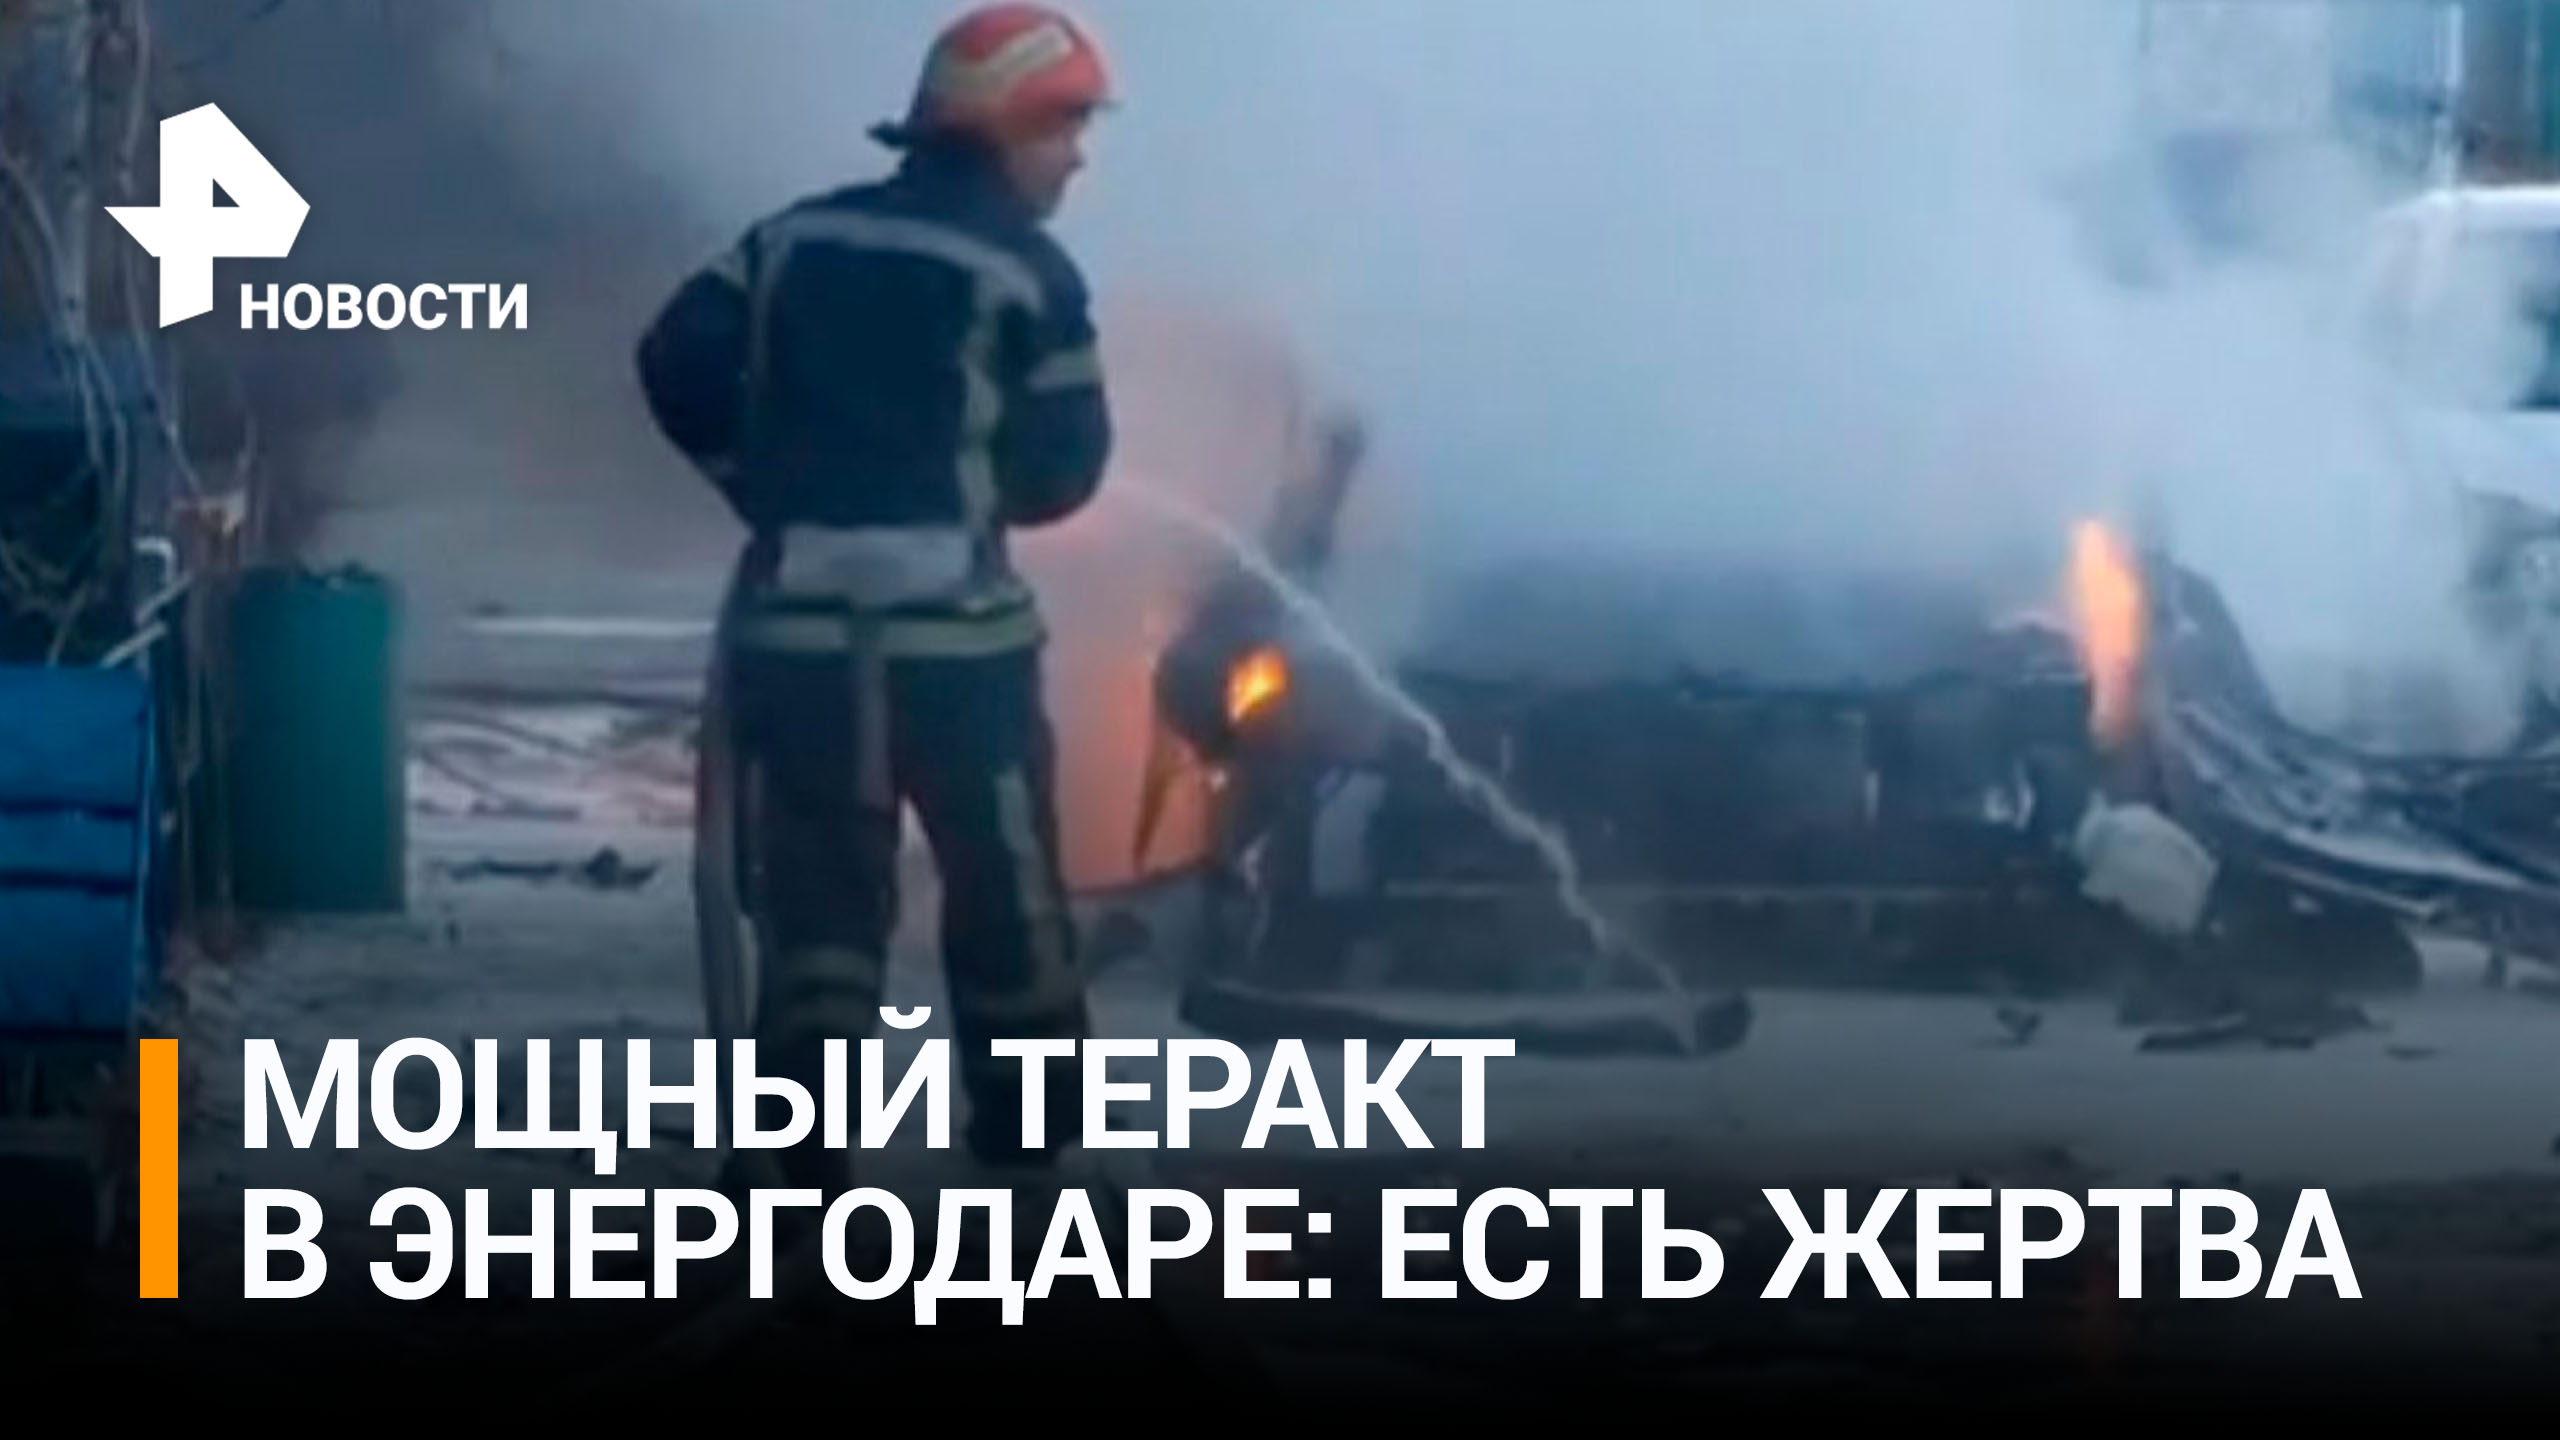 Один человек погиб при взрыве автомобиля в Энергодаре / РЕН Новости